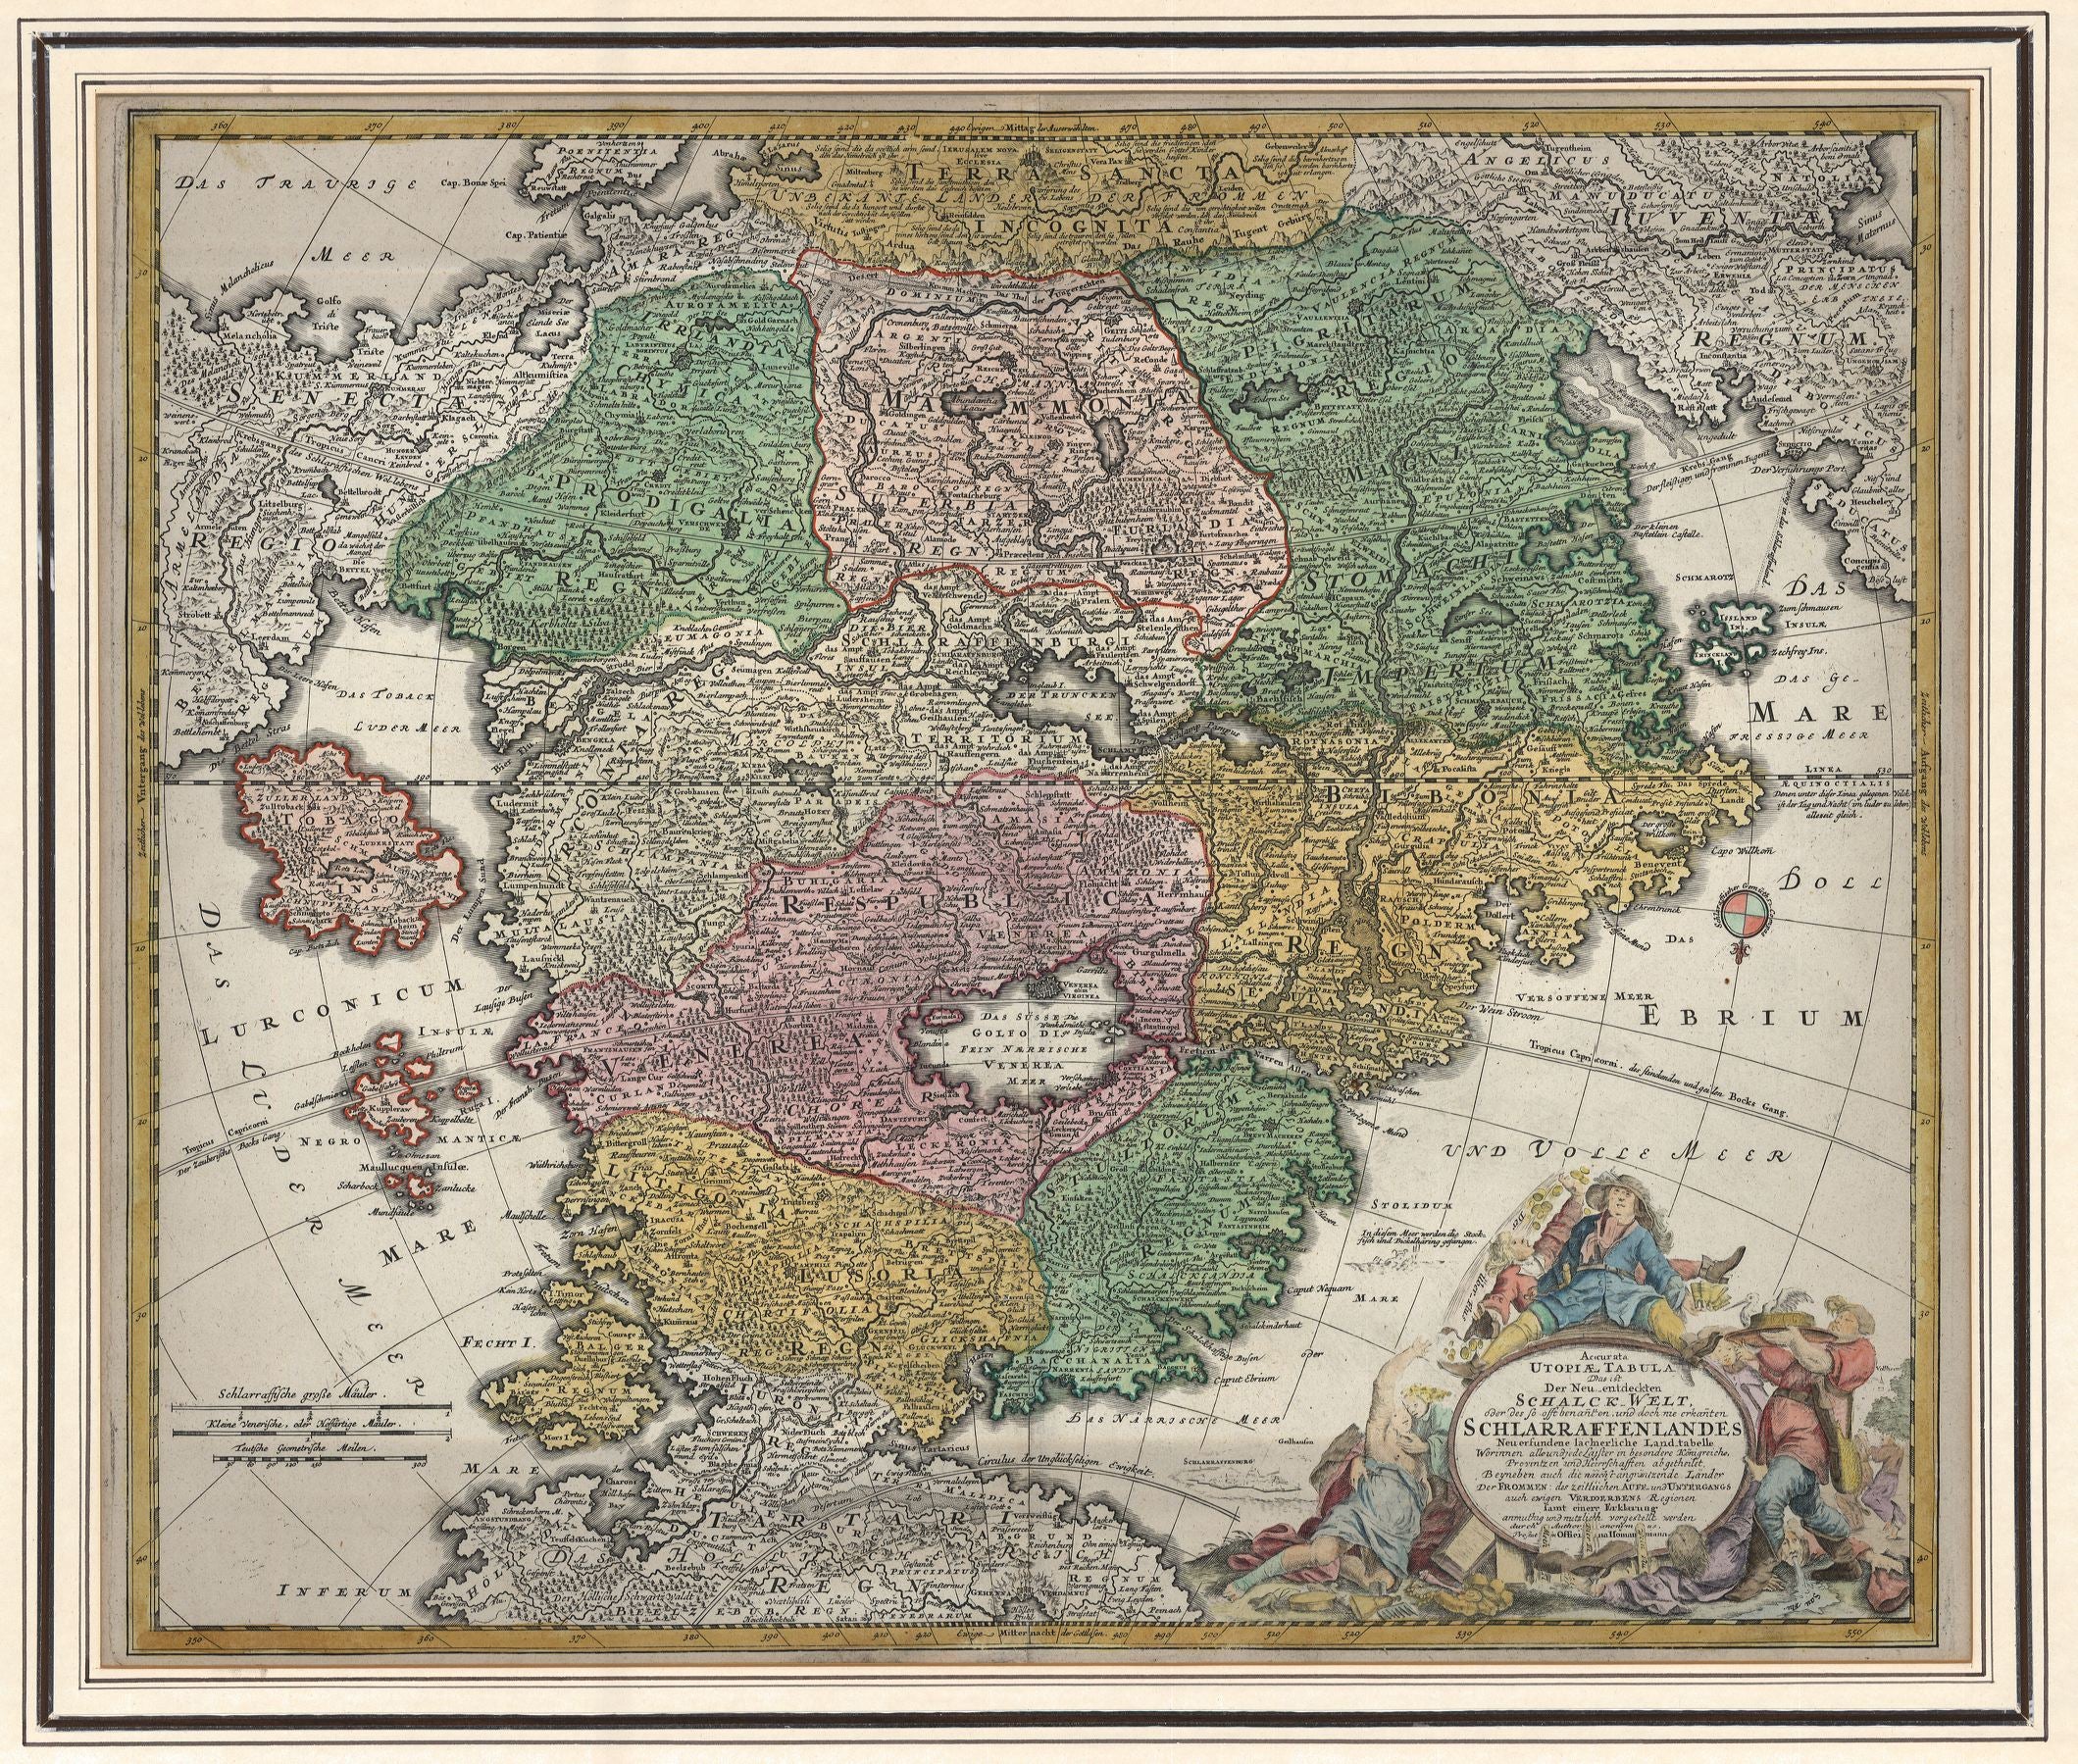 Utopie - Schlaraffenland um das Jahr 1700 von Johann Baptist Homann